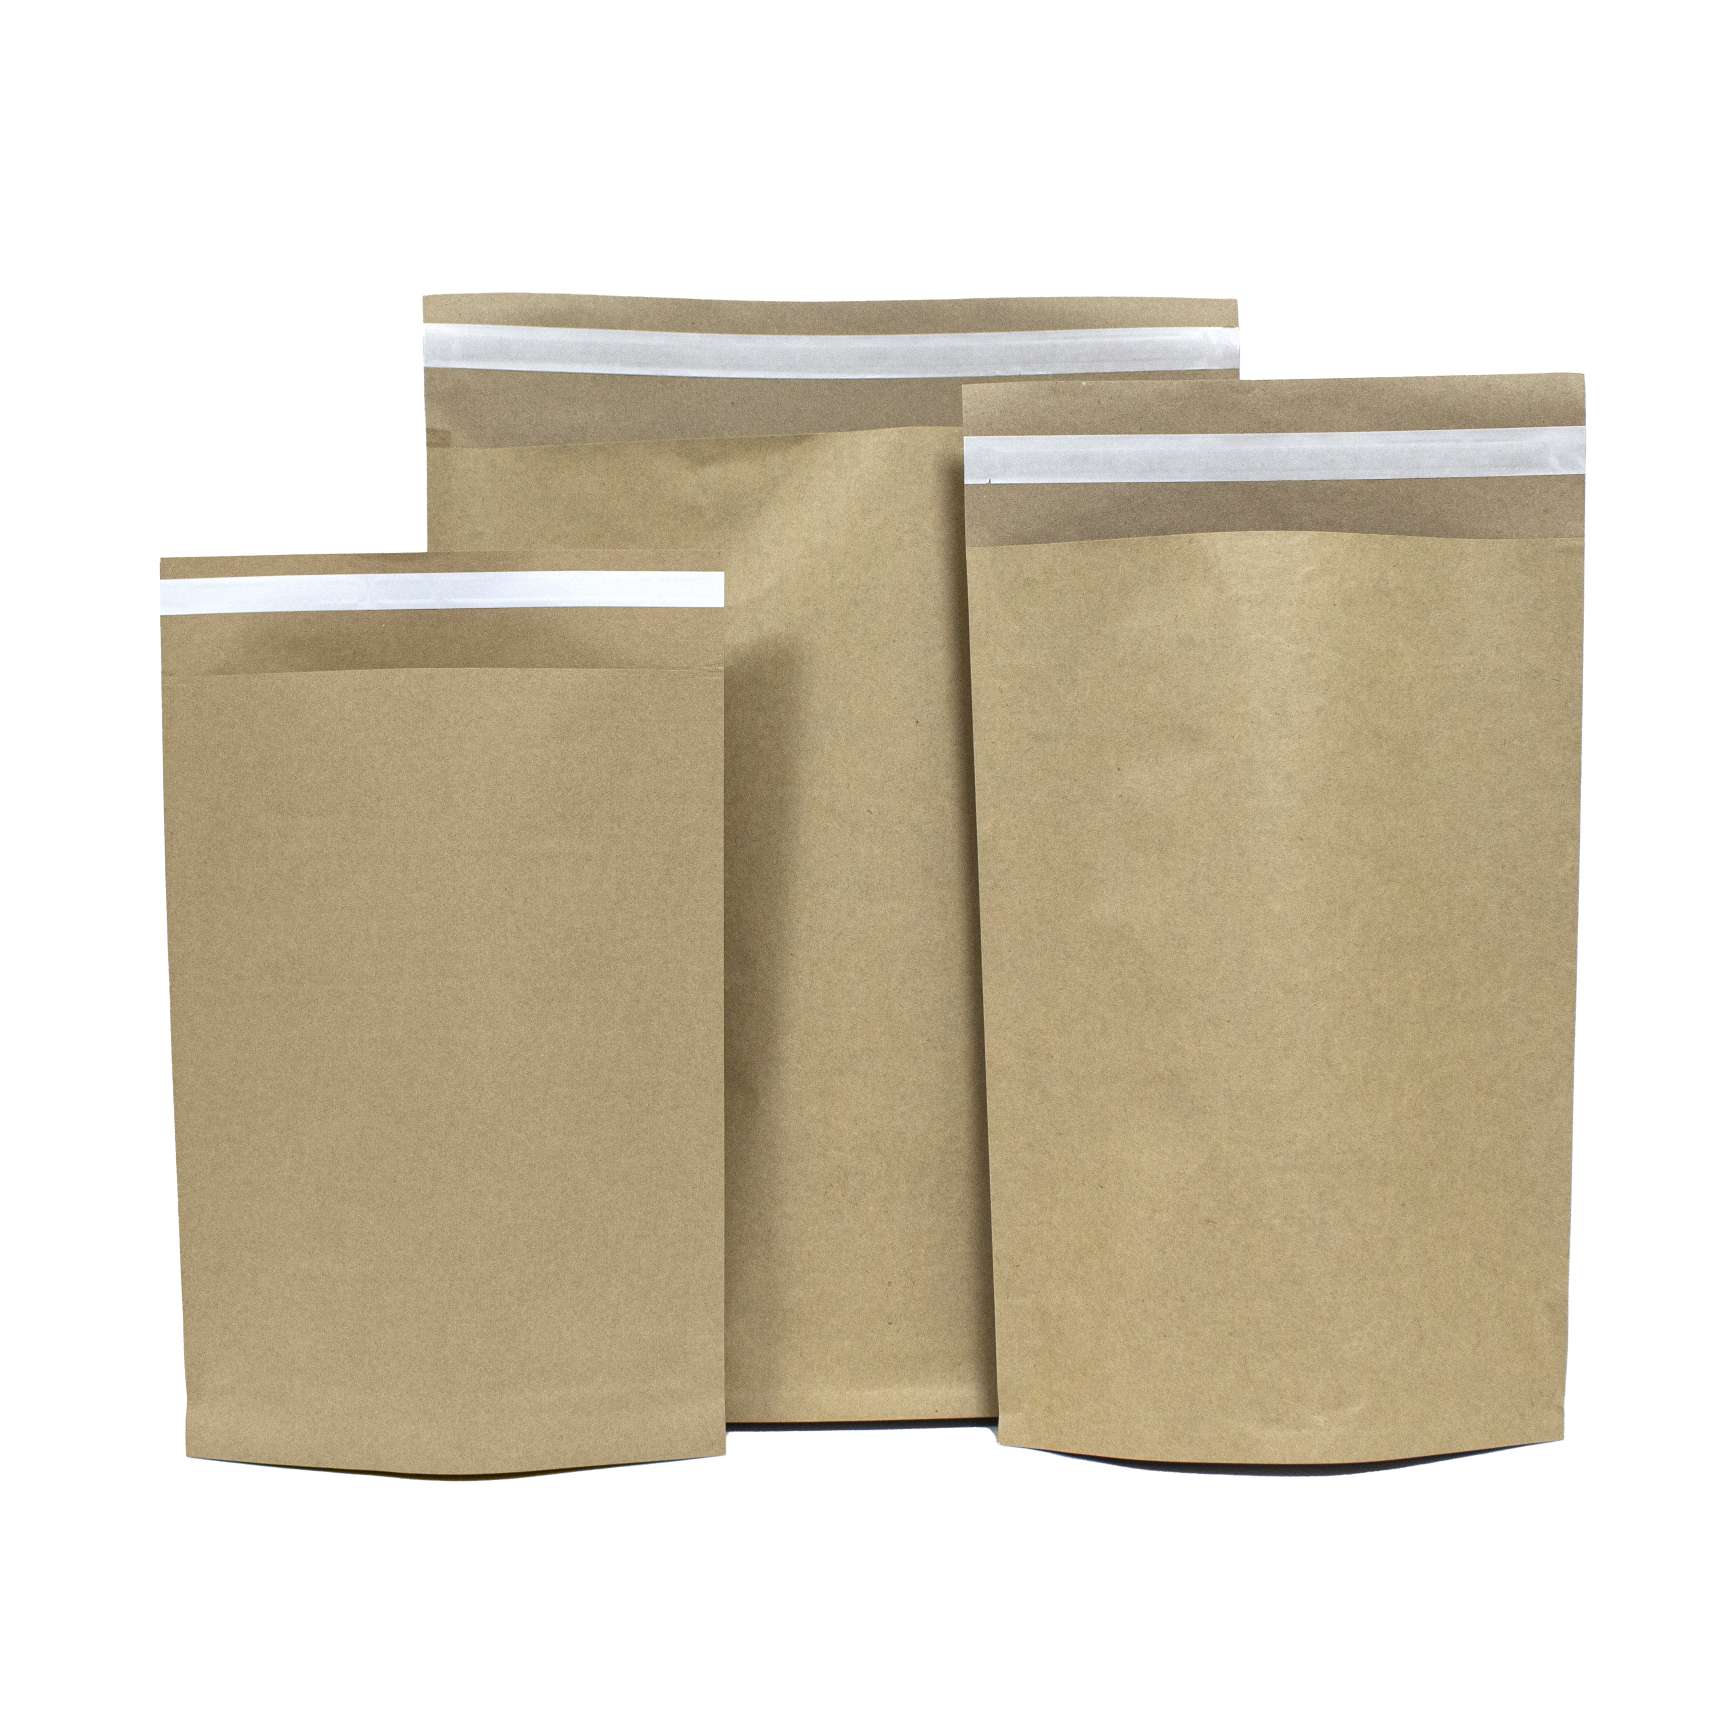 Brown paper mail bag